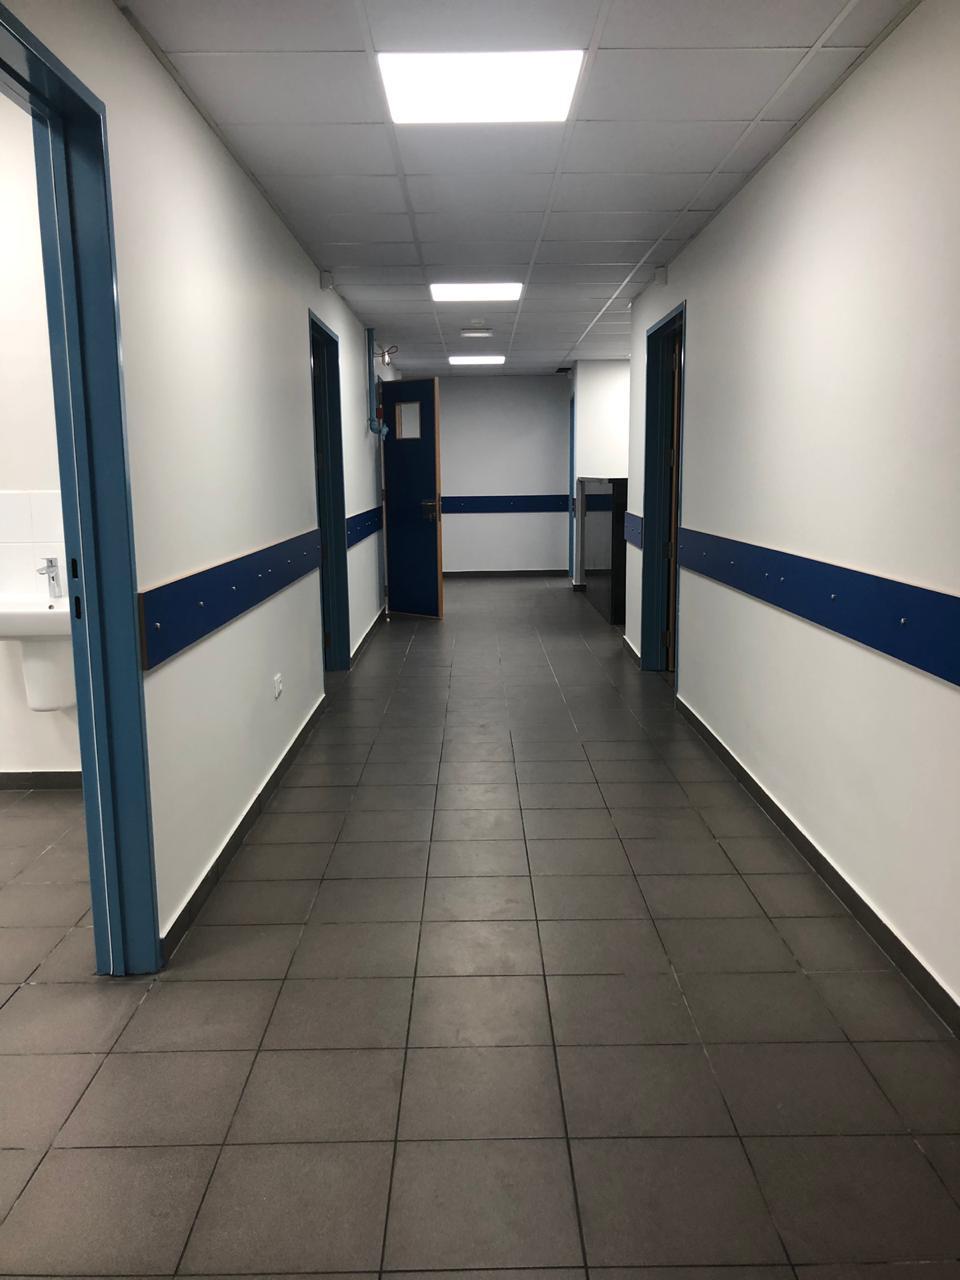 haifa hospital hallway after